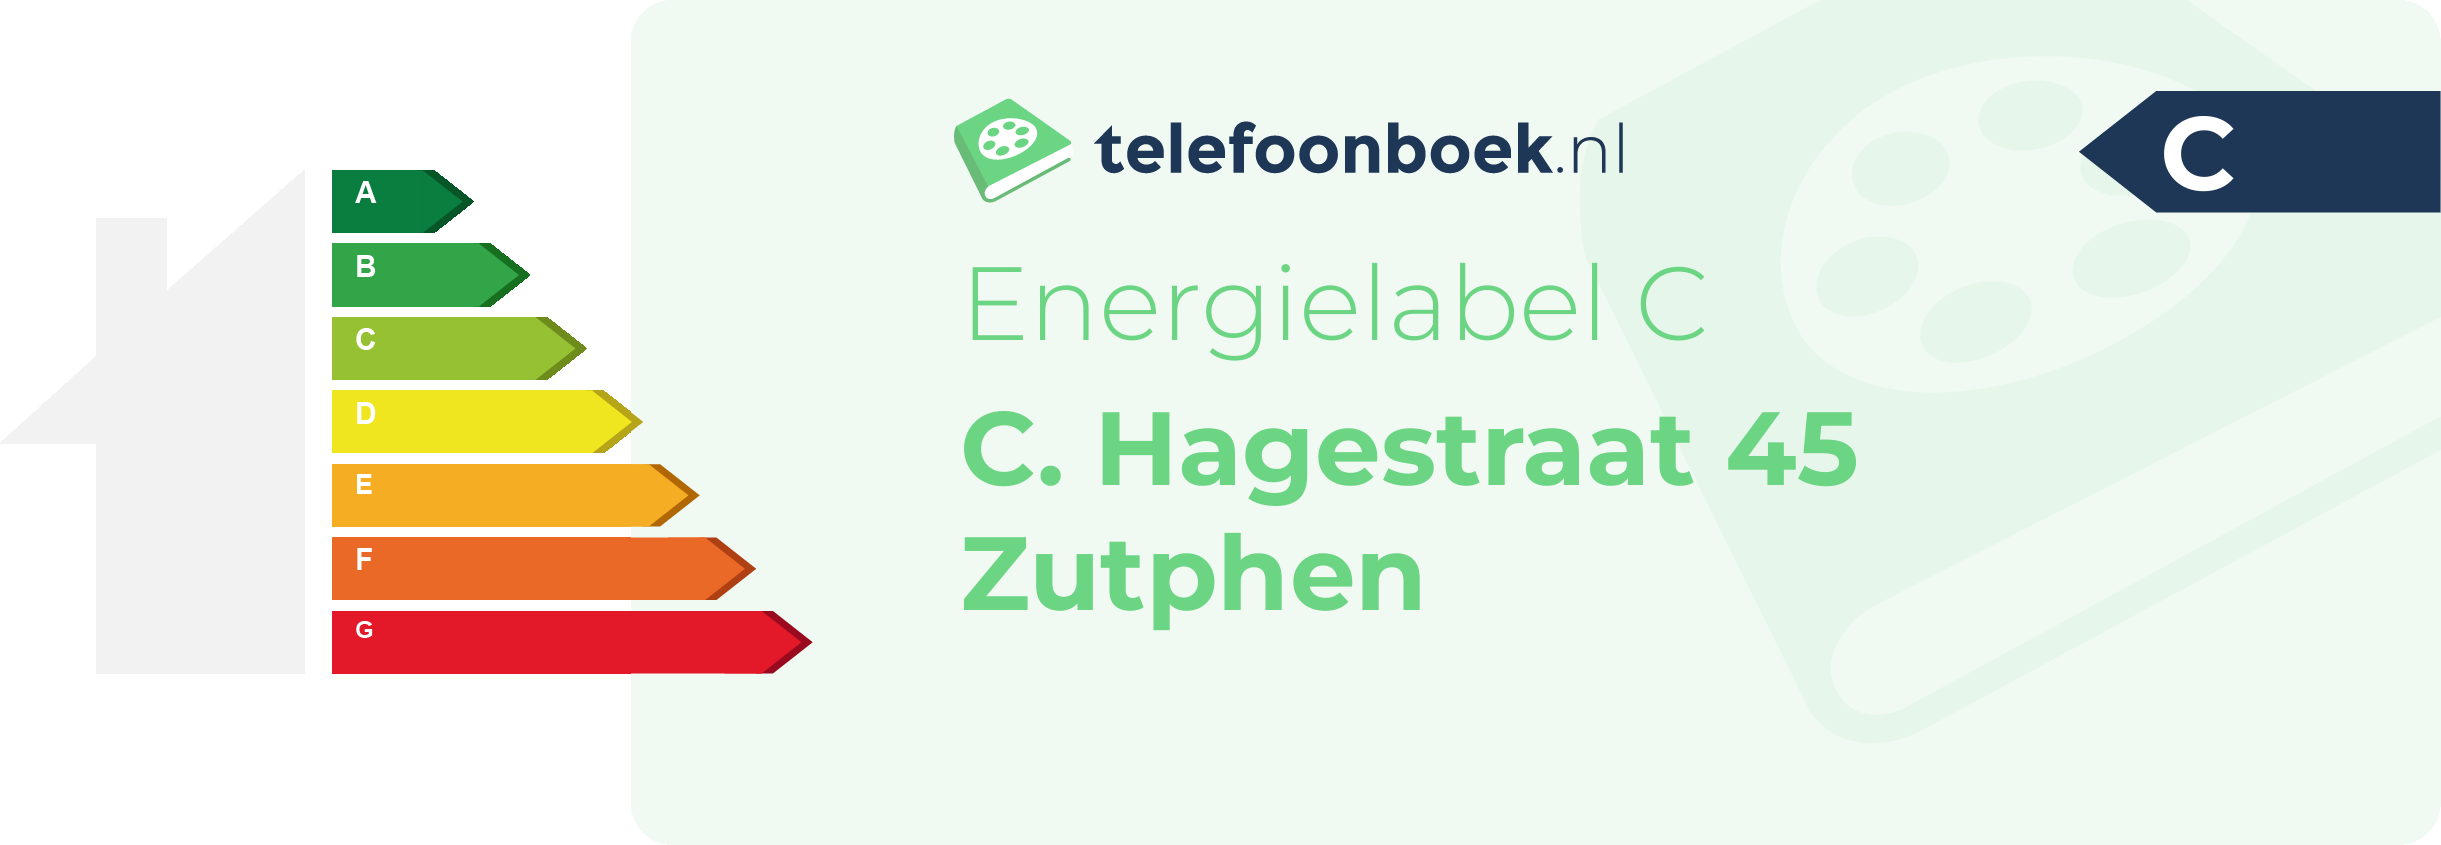 Energielabel C. Hagestraat 45 Zutphen